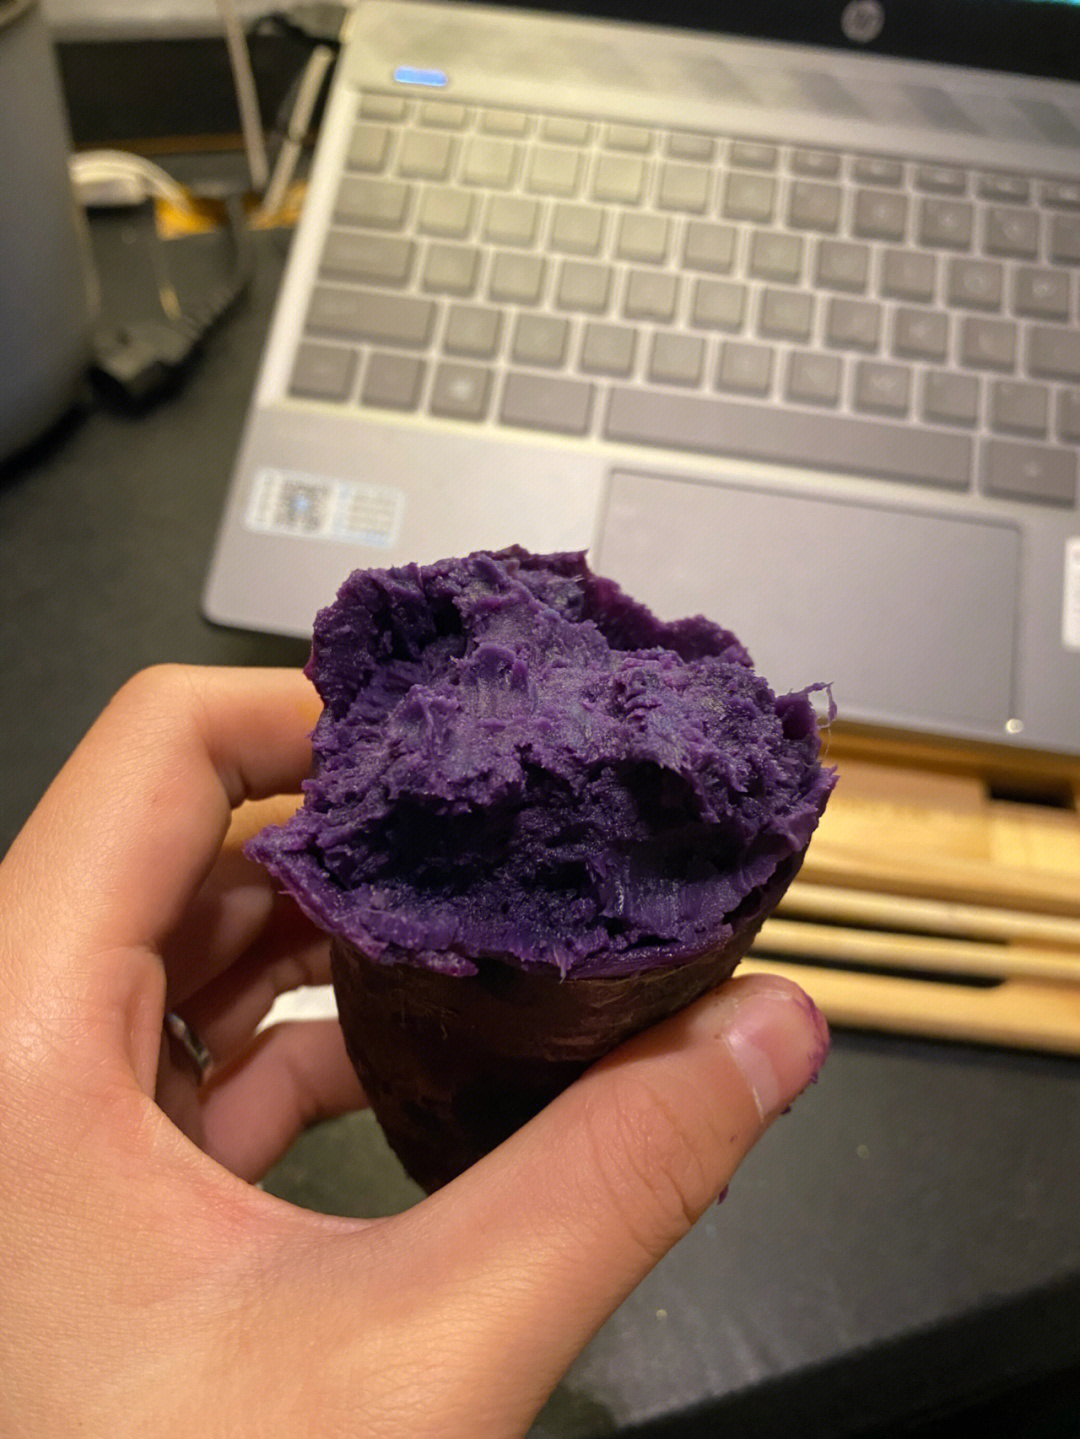 朋友说我是紫薯怪真的很好次啊家人们